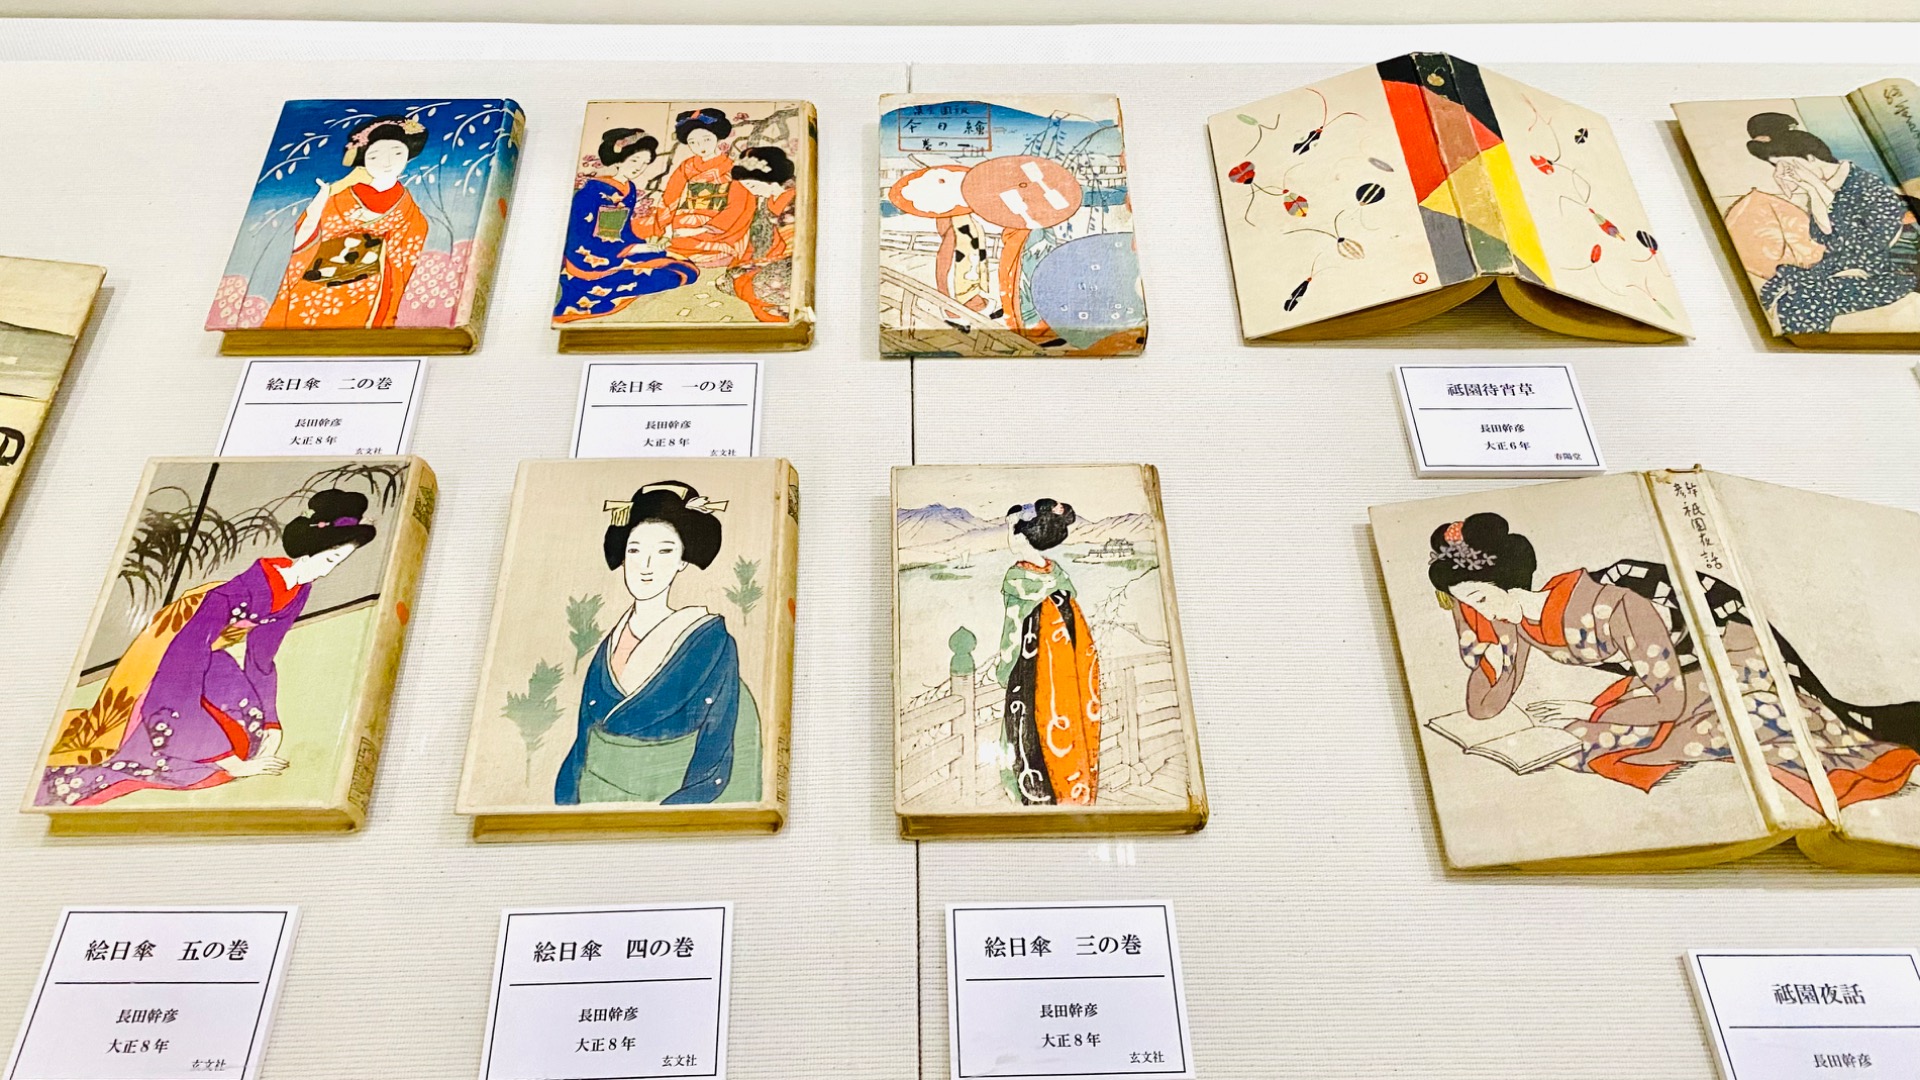 姫路市】女性たちの姿に魅了される竹久夢二の世界へ。姫路文学館